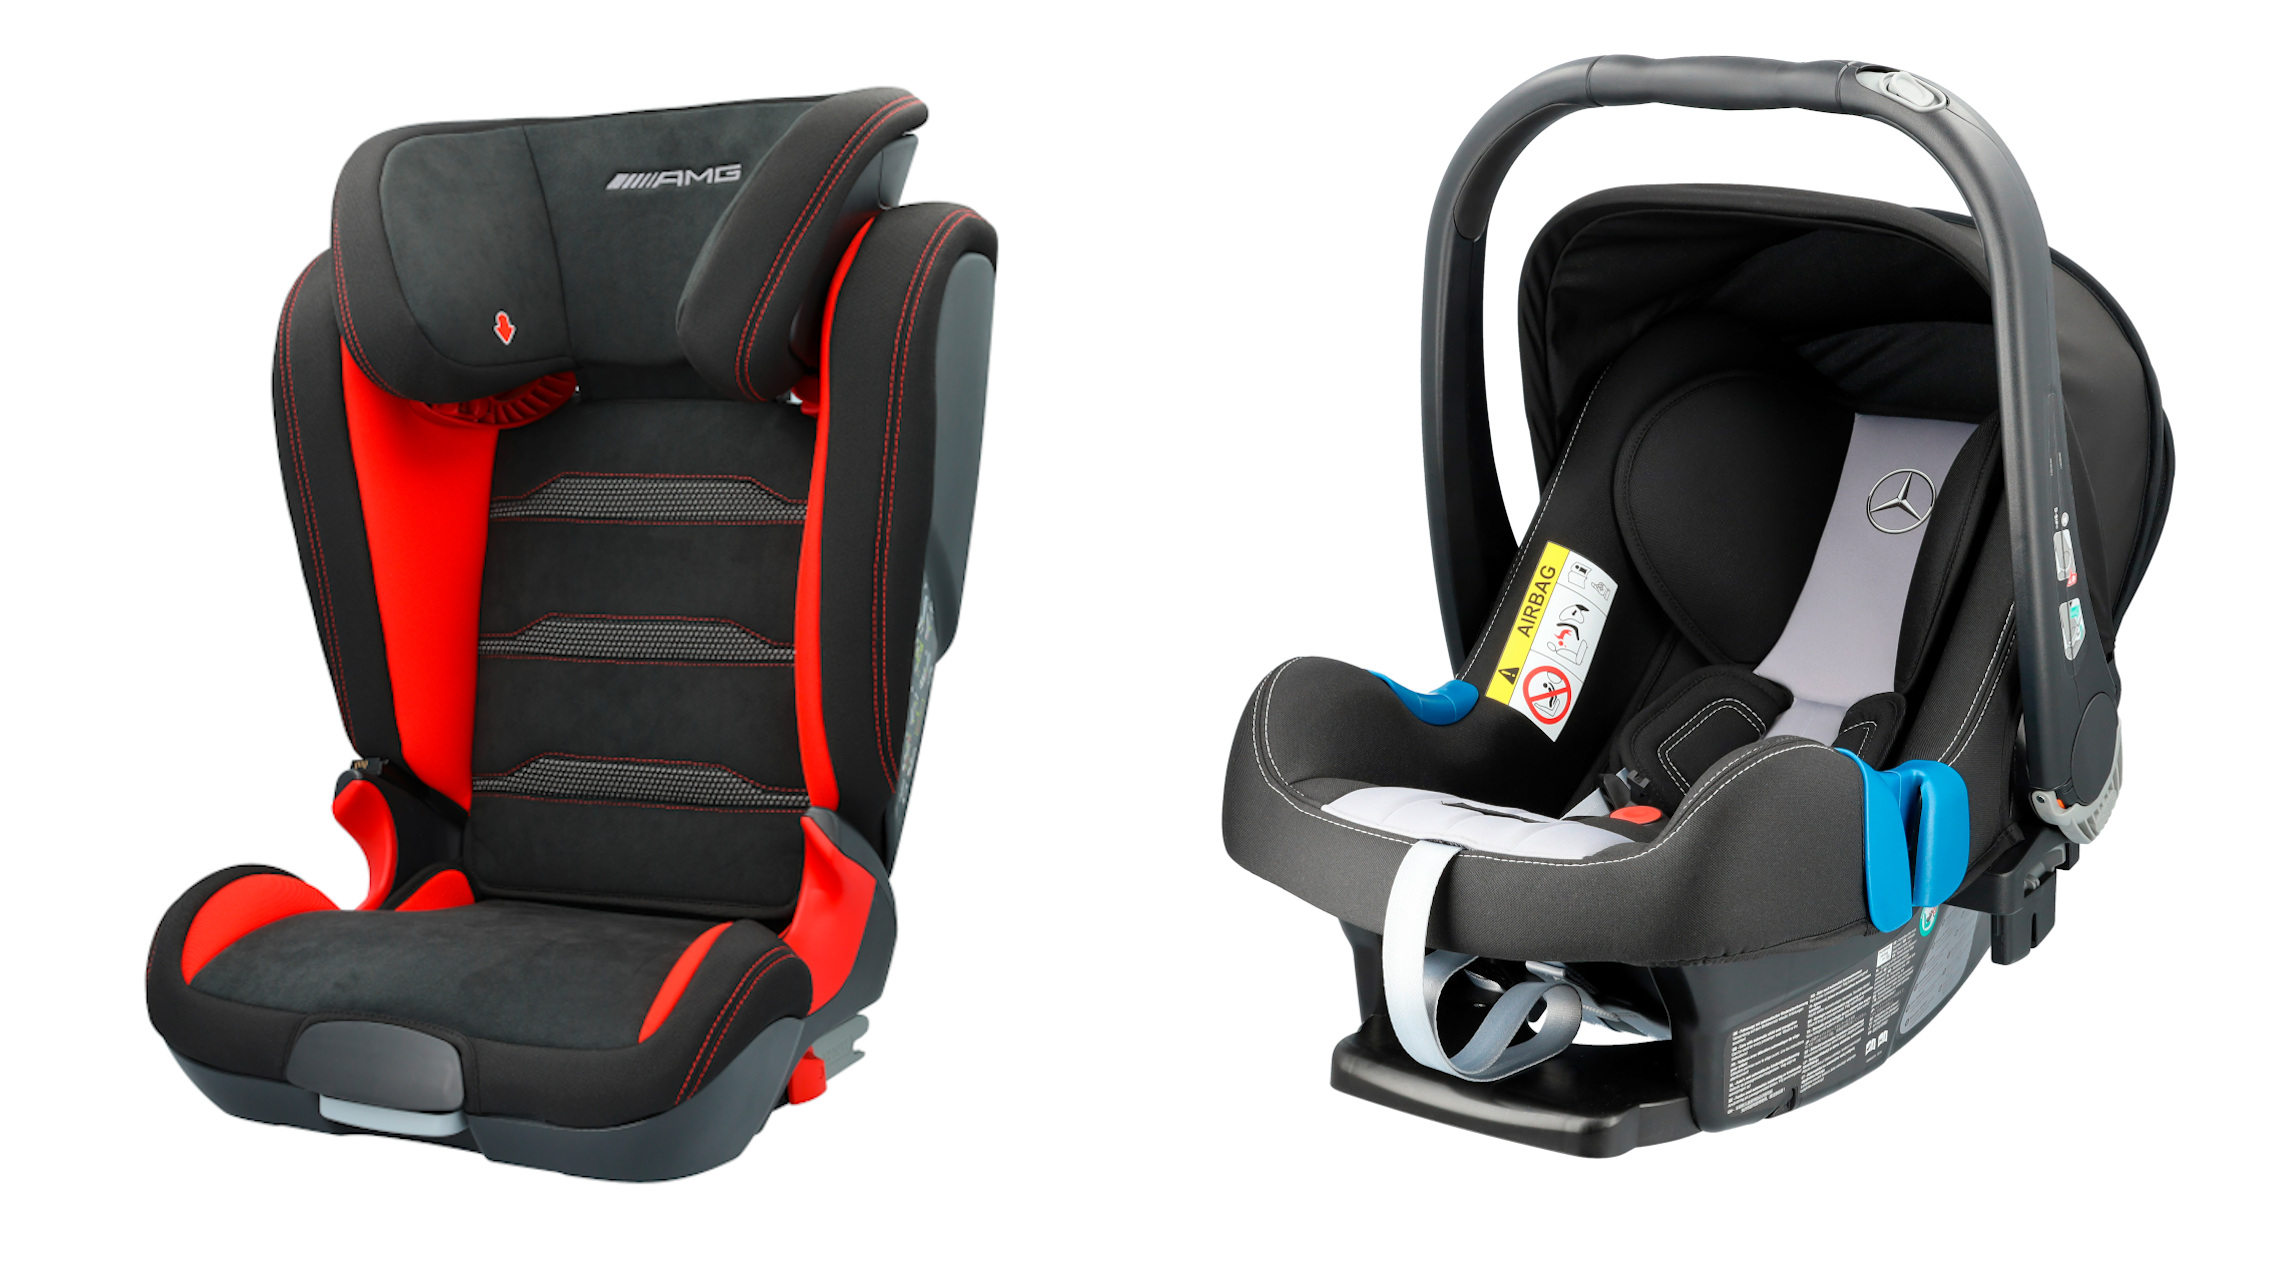 MercedesBenz reveals its new car seats for children